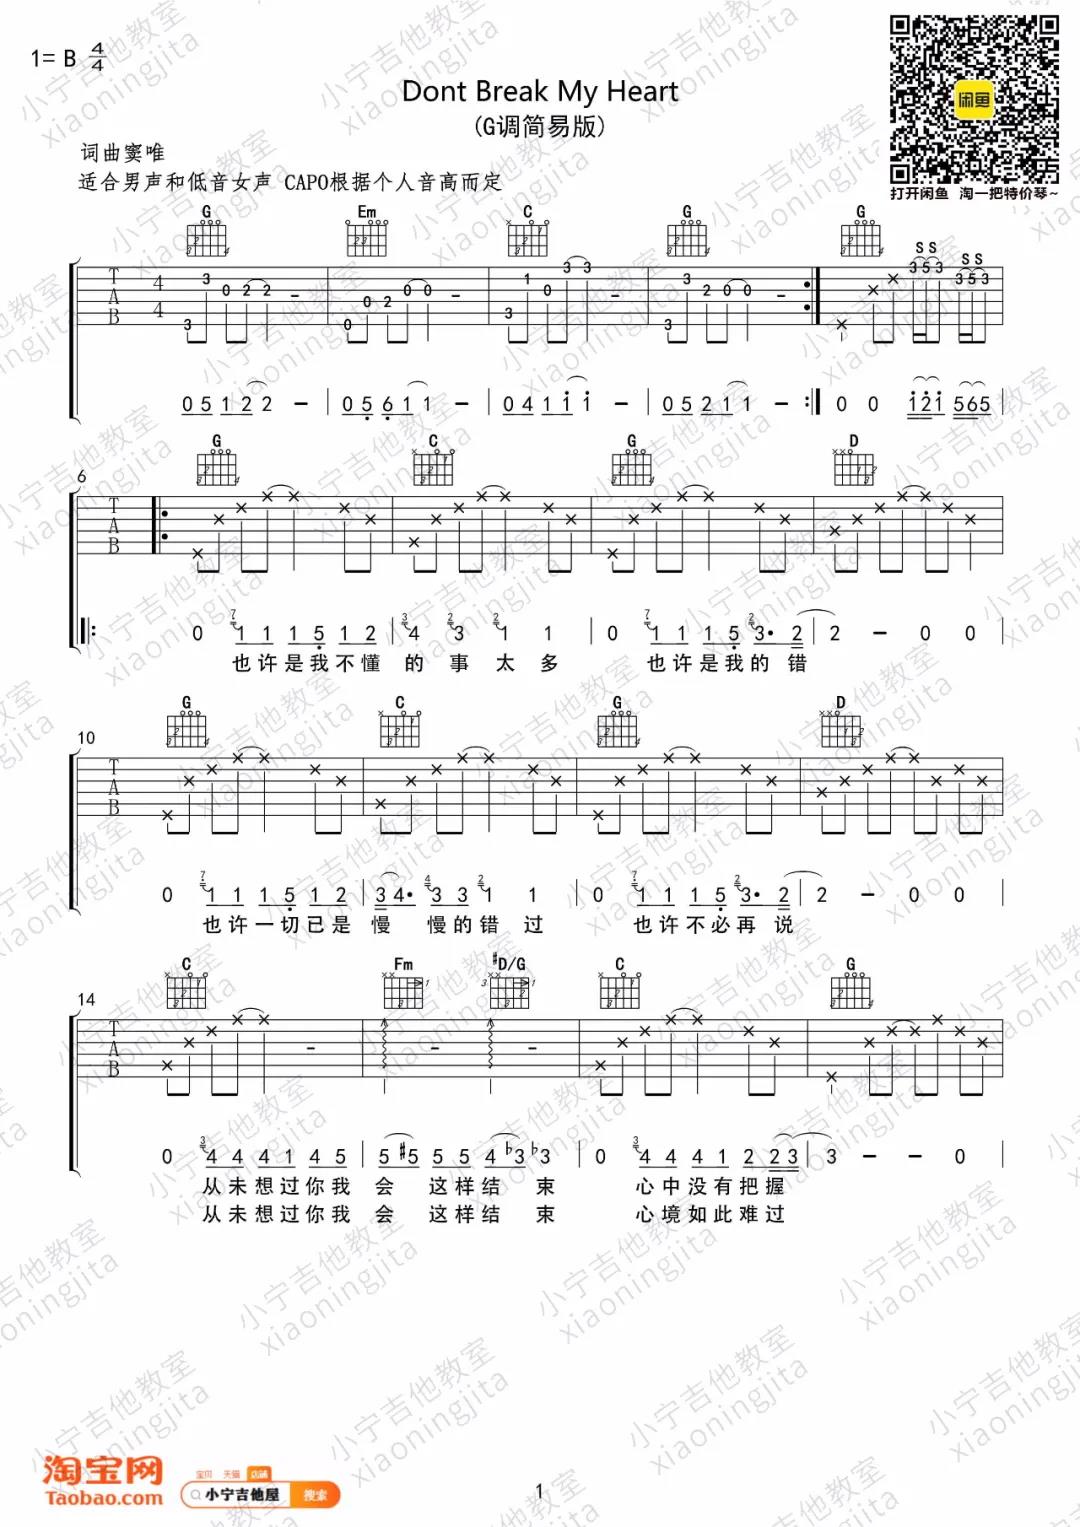 黑豹乐队《Dont Break My Heart》吉他谱(C调)-Guitar Music Score